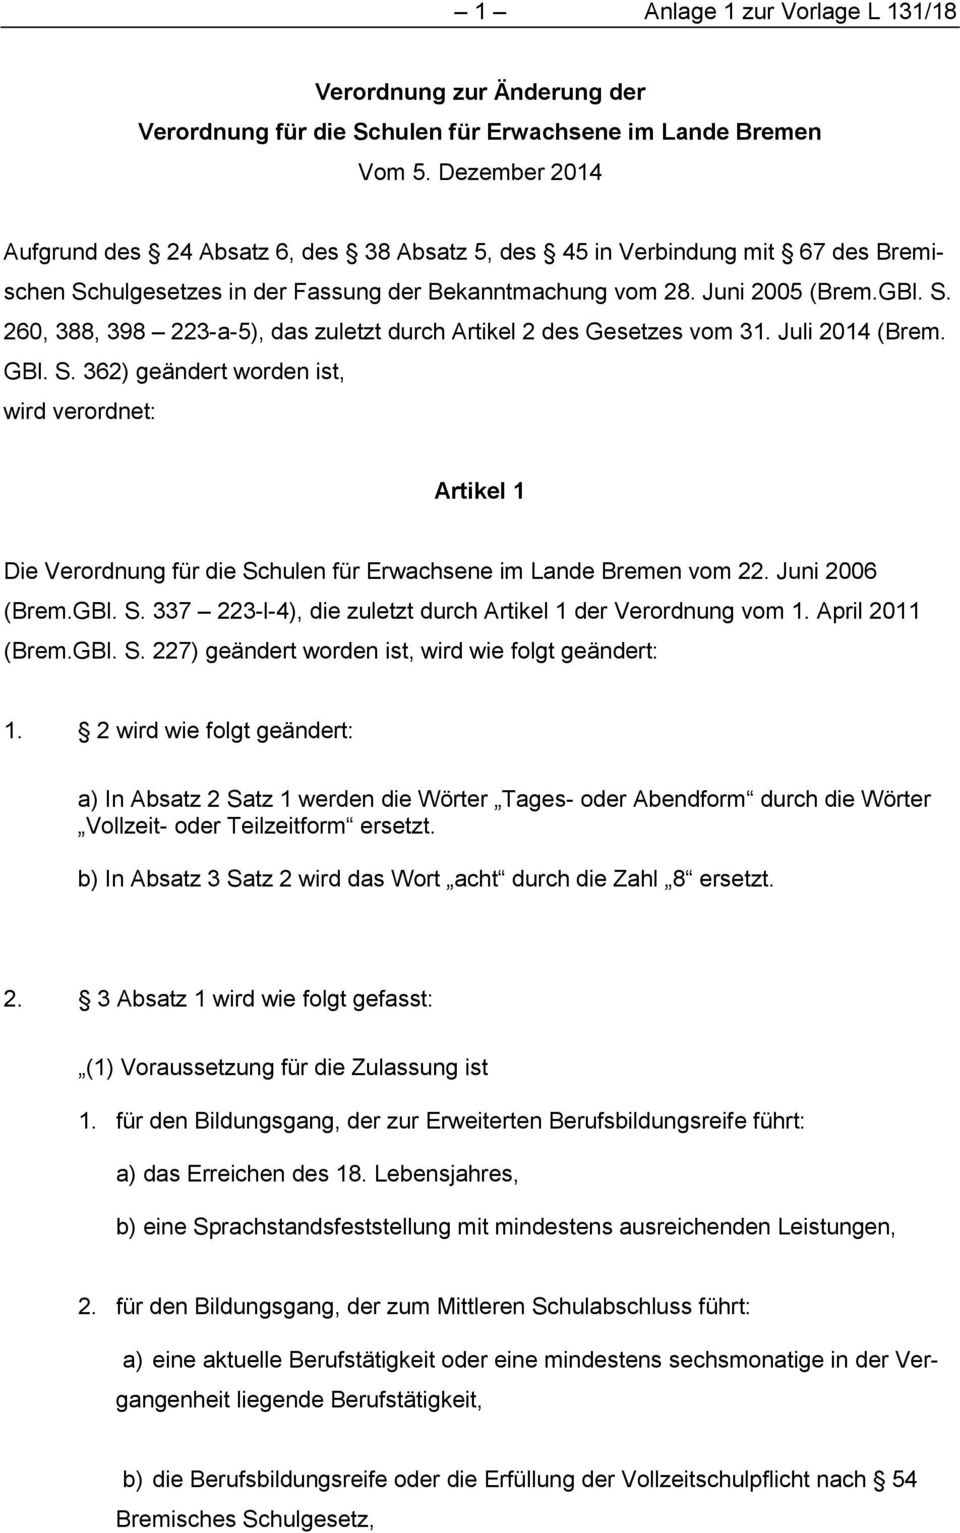 Juli 2014 (Brem. GBl. S. 362) geändert worden ist, wird verordnet: Artikel 1 Die Verordnung für die Schulen für Erwachsene im Lande Bremen vom 22. Juni 2006 (Brem.GBl. S. 337 223-l-4), die zuletzt durch Artikel 1 der Verordnung vom 1.